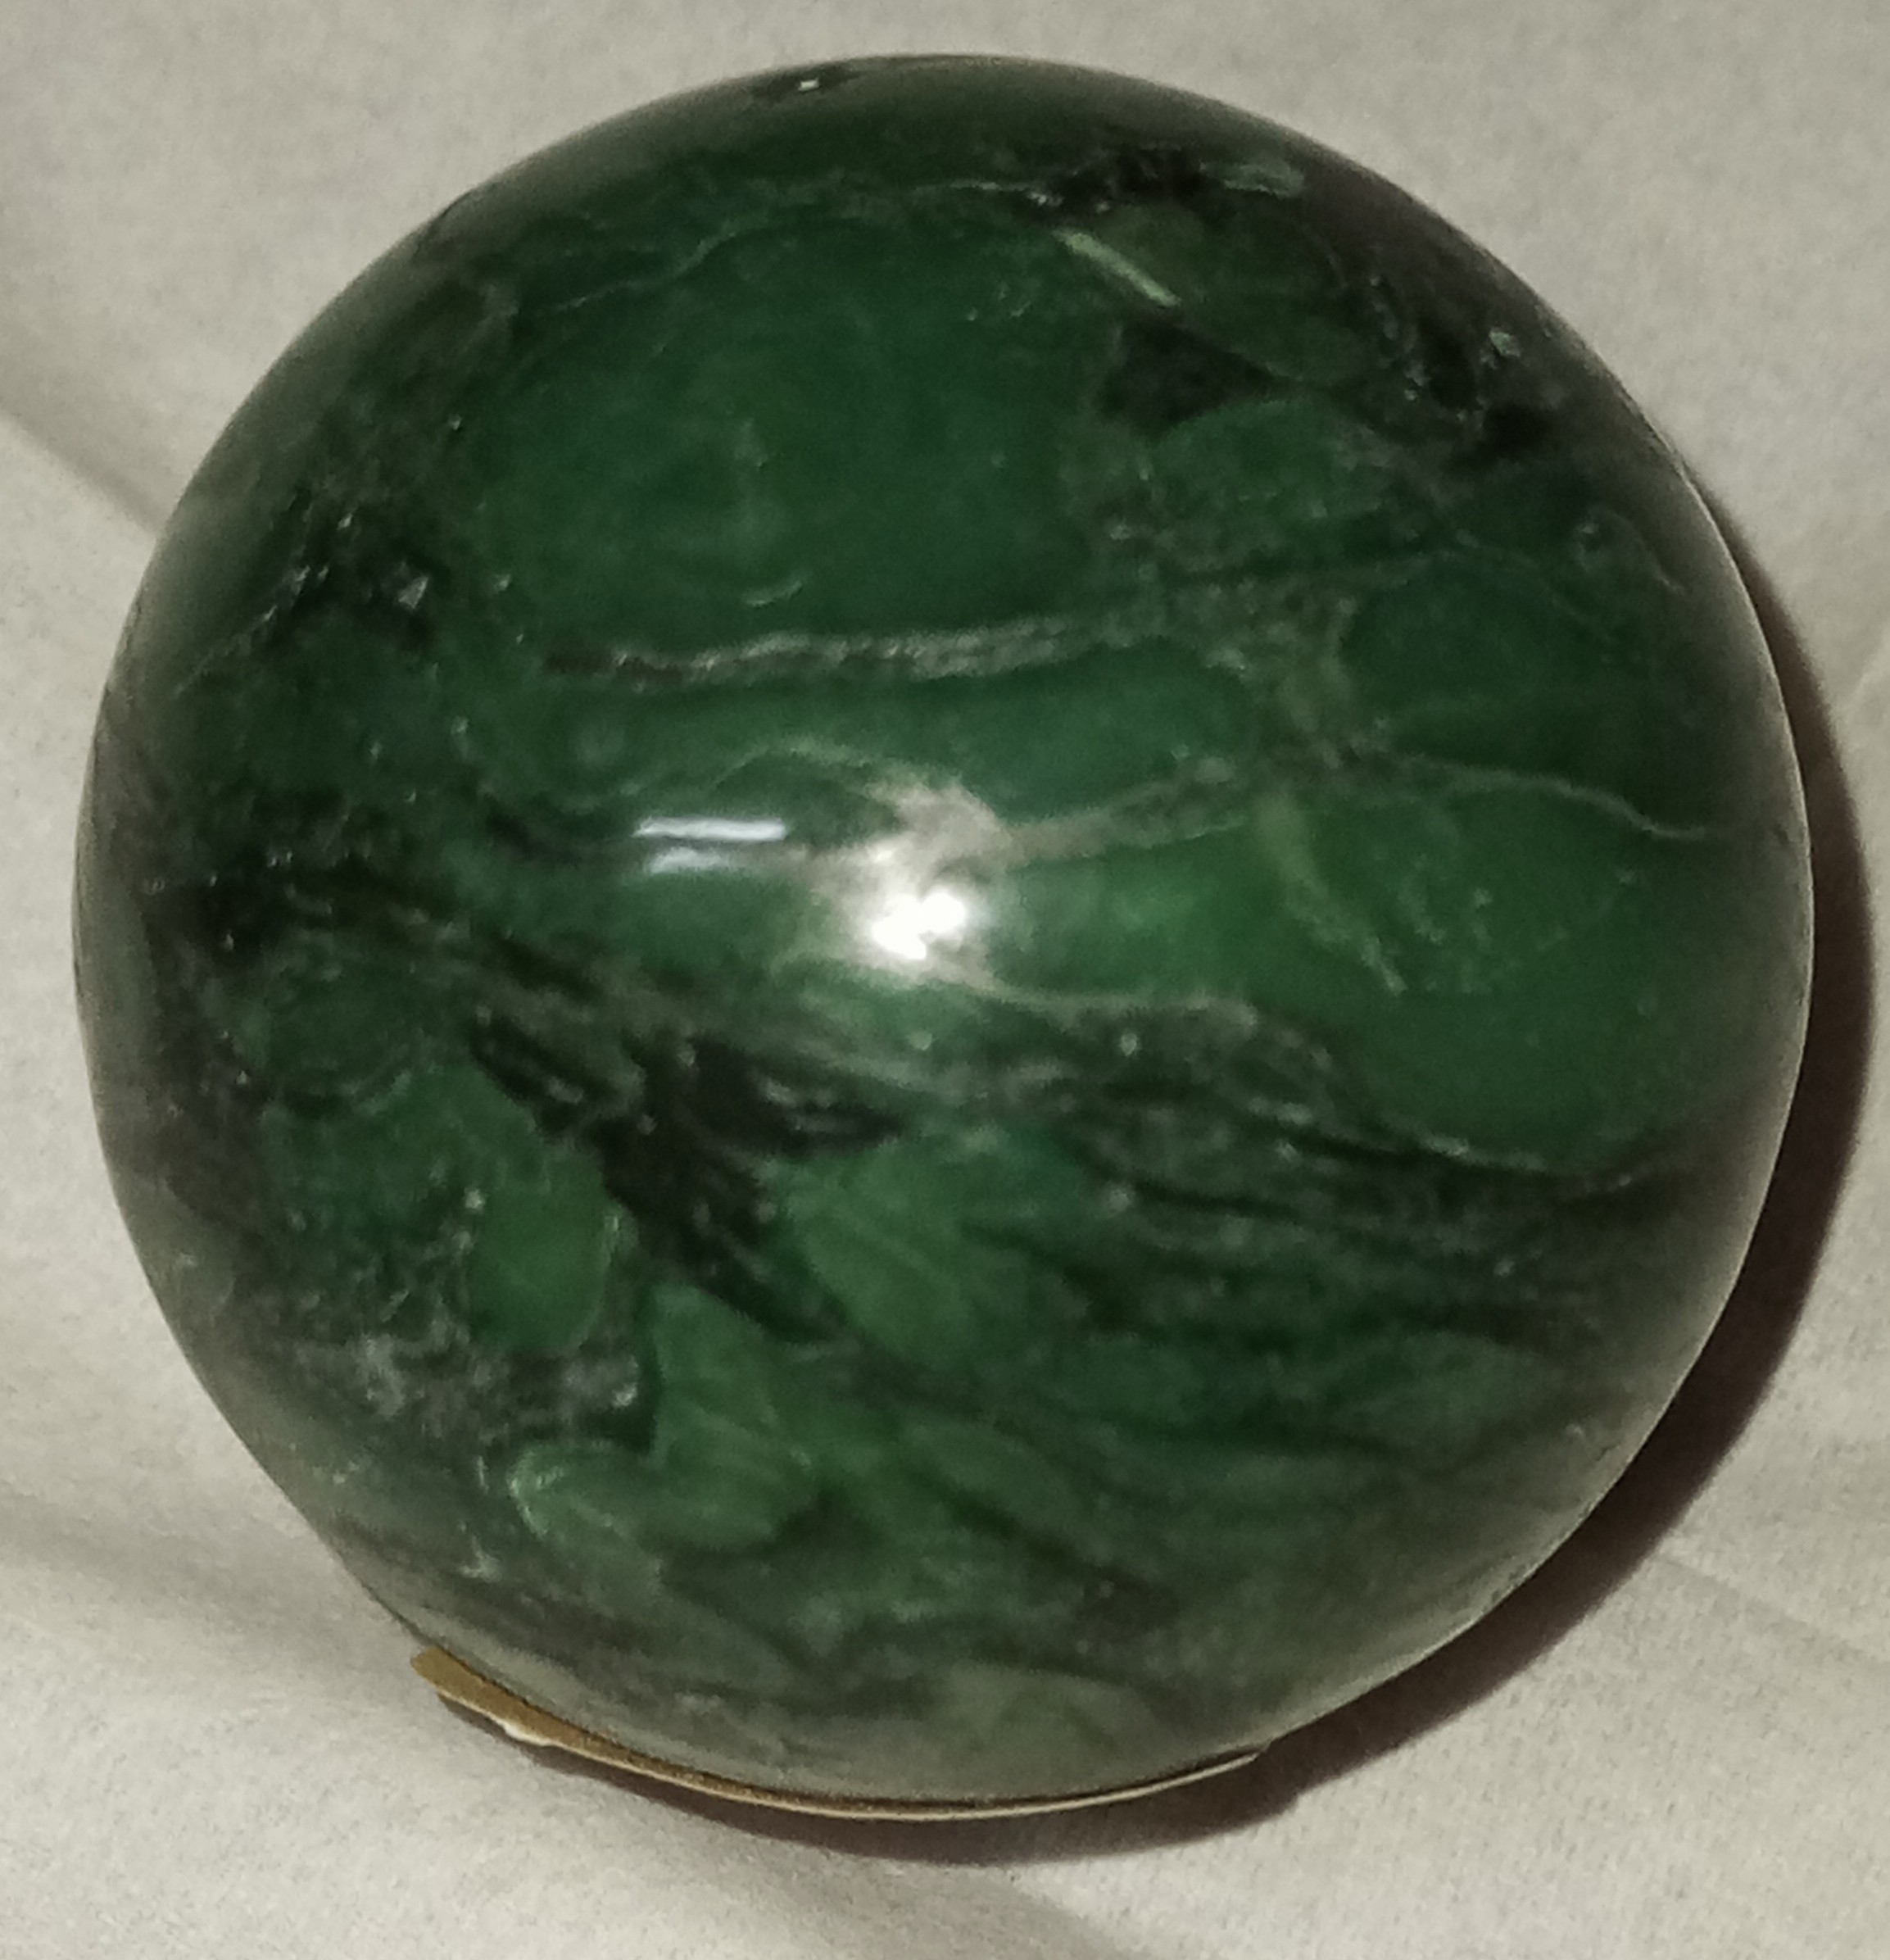 African Jade sphere